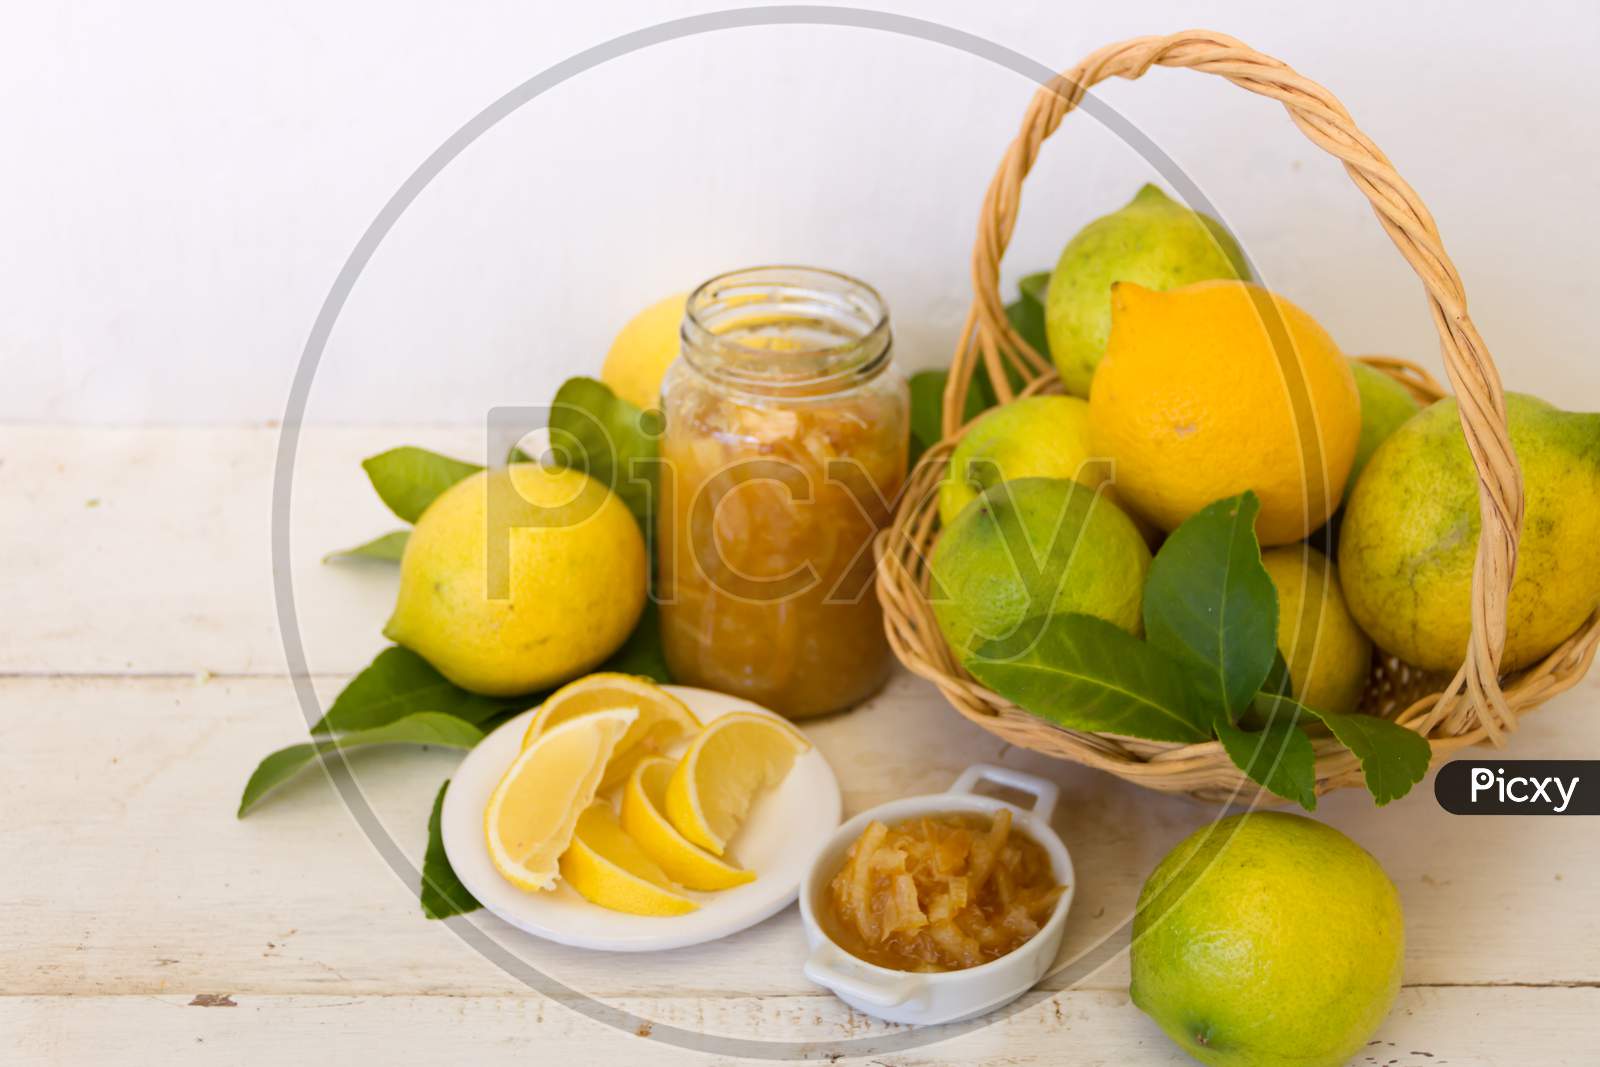 Sweet Lemon Jam From The Organic Garden